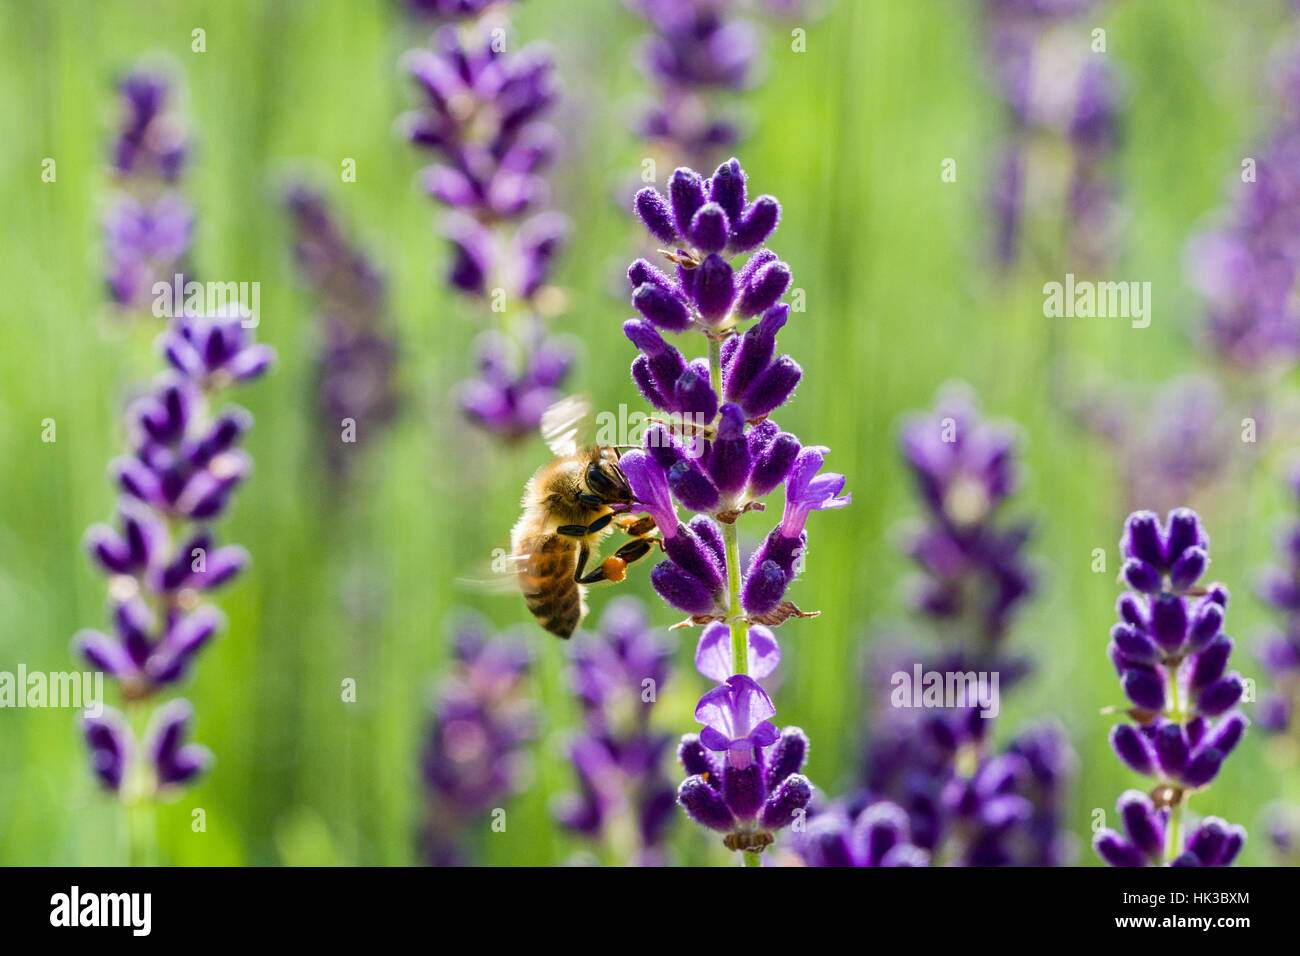 Un miele Carniolan bee (Apis mellifera Carnica) è la raccolta di nettare in un viola LAVANDA (Lavandula) blossom Foto Stock